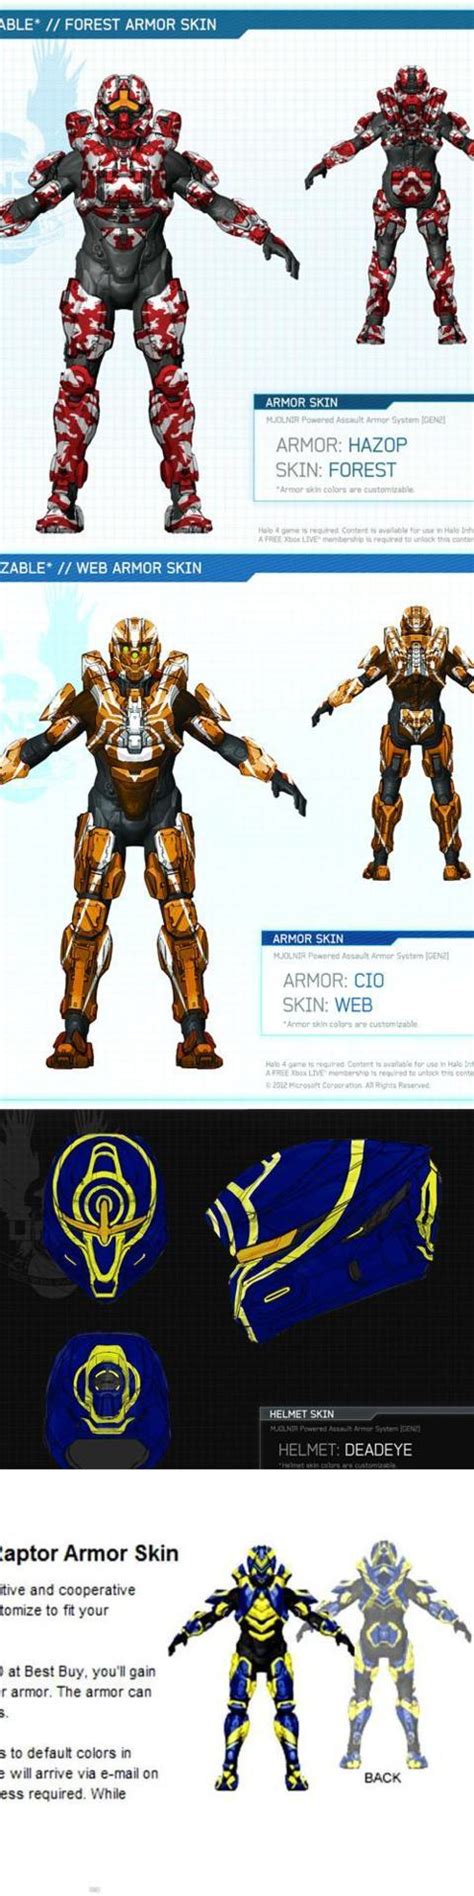 Halo 4 News Now Armor Skins Bestbuy Skin Raptor Armor Unknown